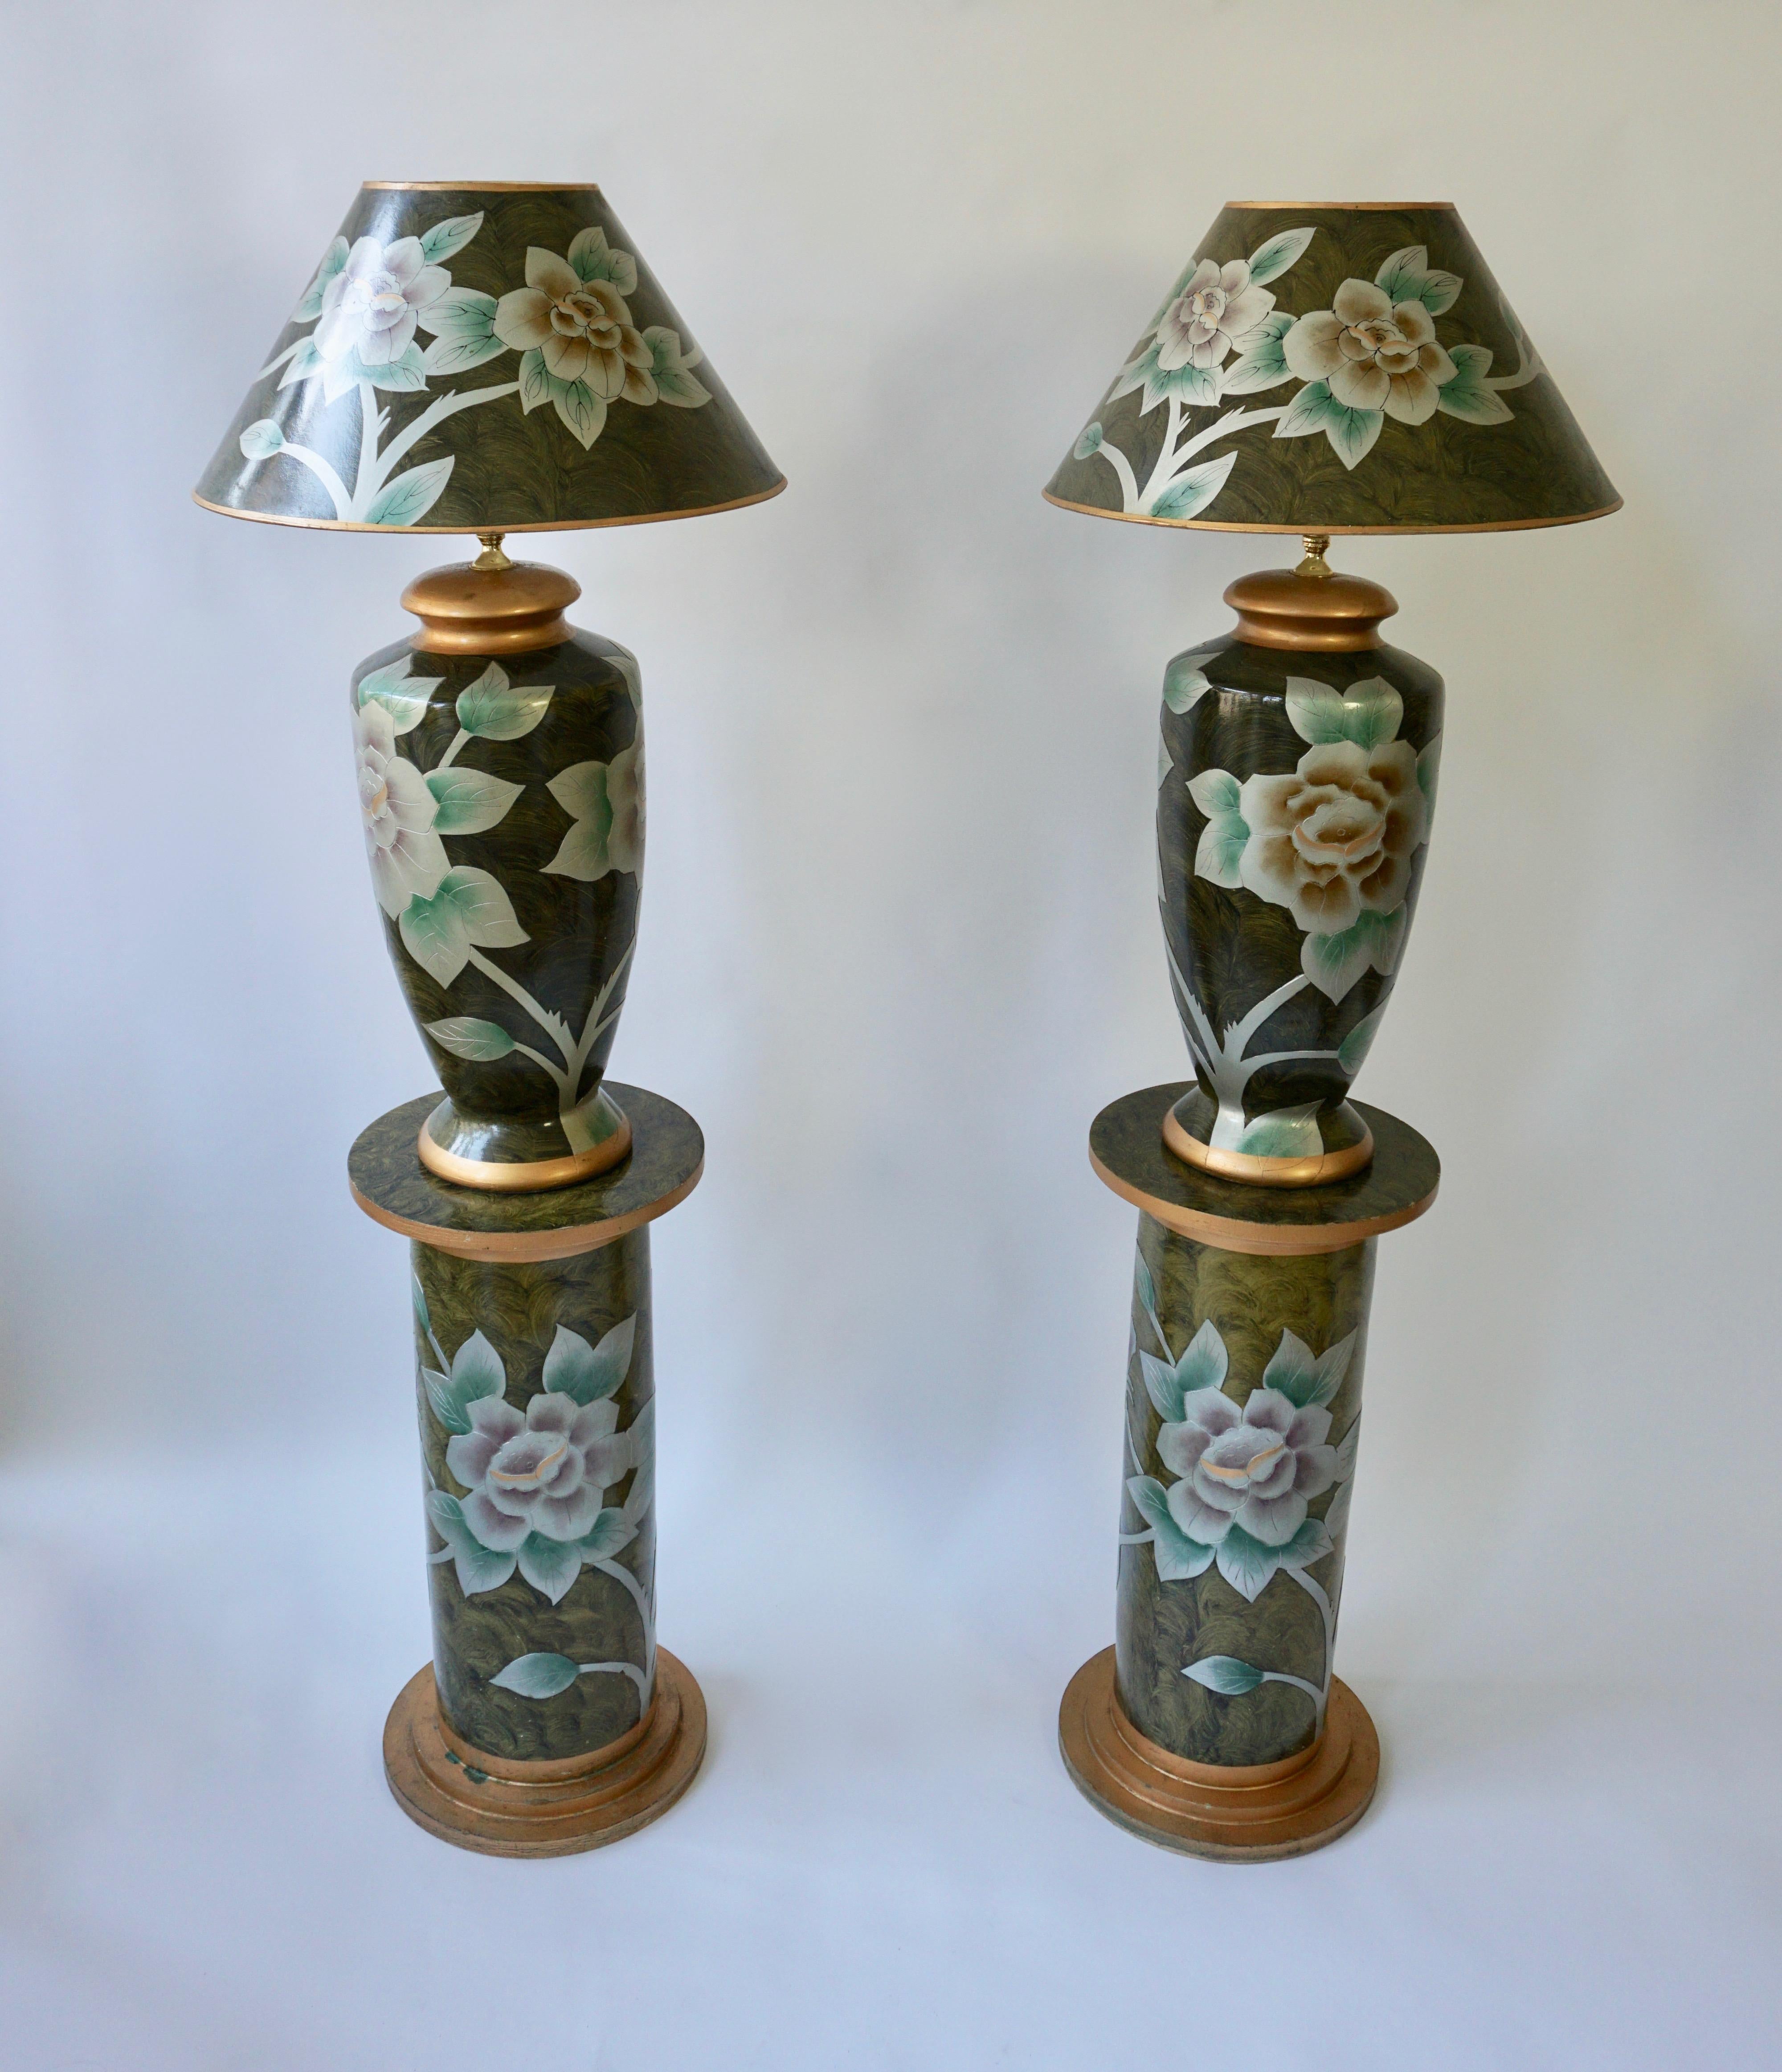 Zwei schöne Terrakotta-Tischlampen auf zwei Sockeln. Italien, 1970er Jahre.

Maßnahmen:
 Höhe Tischlampe 88 cm, Durchmesser 50 cm.
Höhe Sockel 69 cm, Durchmesser 33 cm.
Gesamthöhe 157 cm.
Eine E27-Glühbirne.